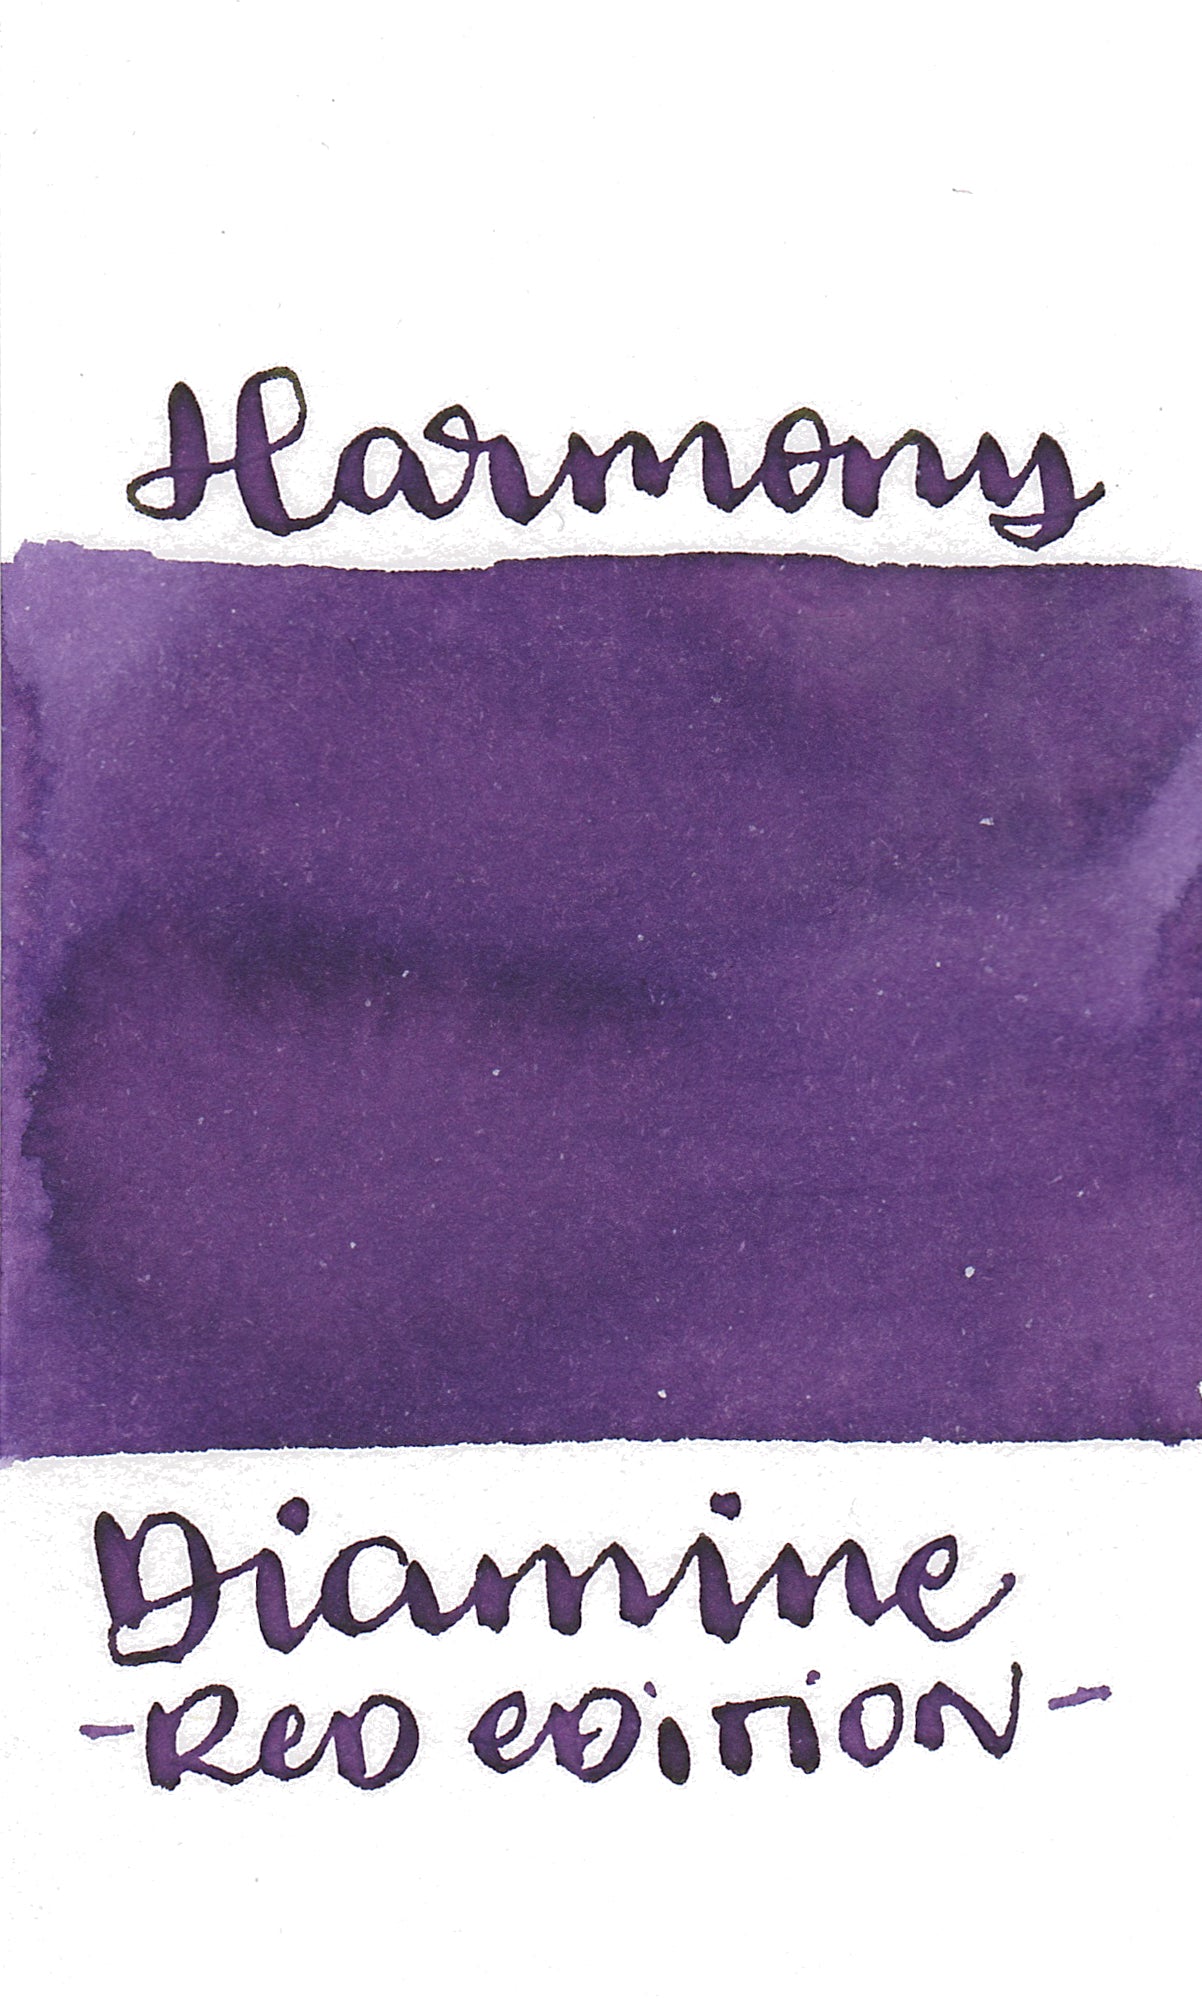 Diamine Red Edition Harmony